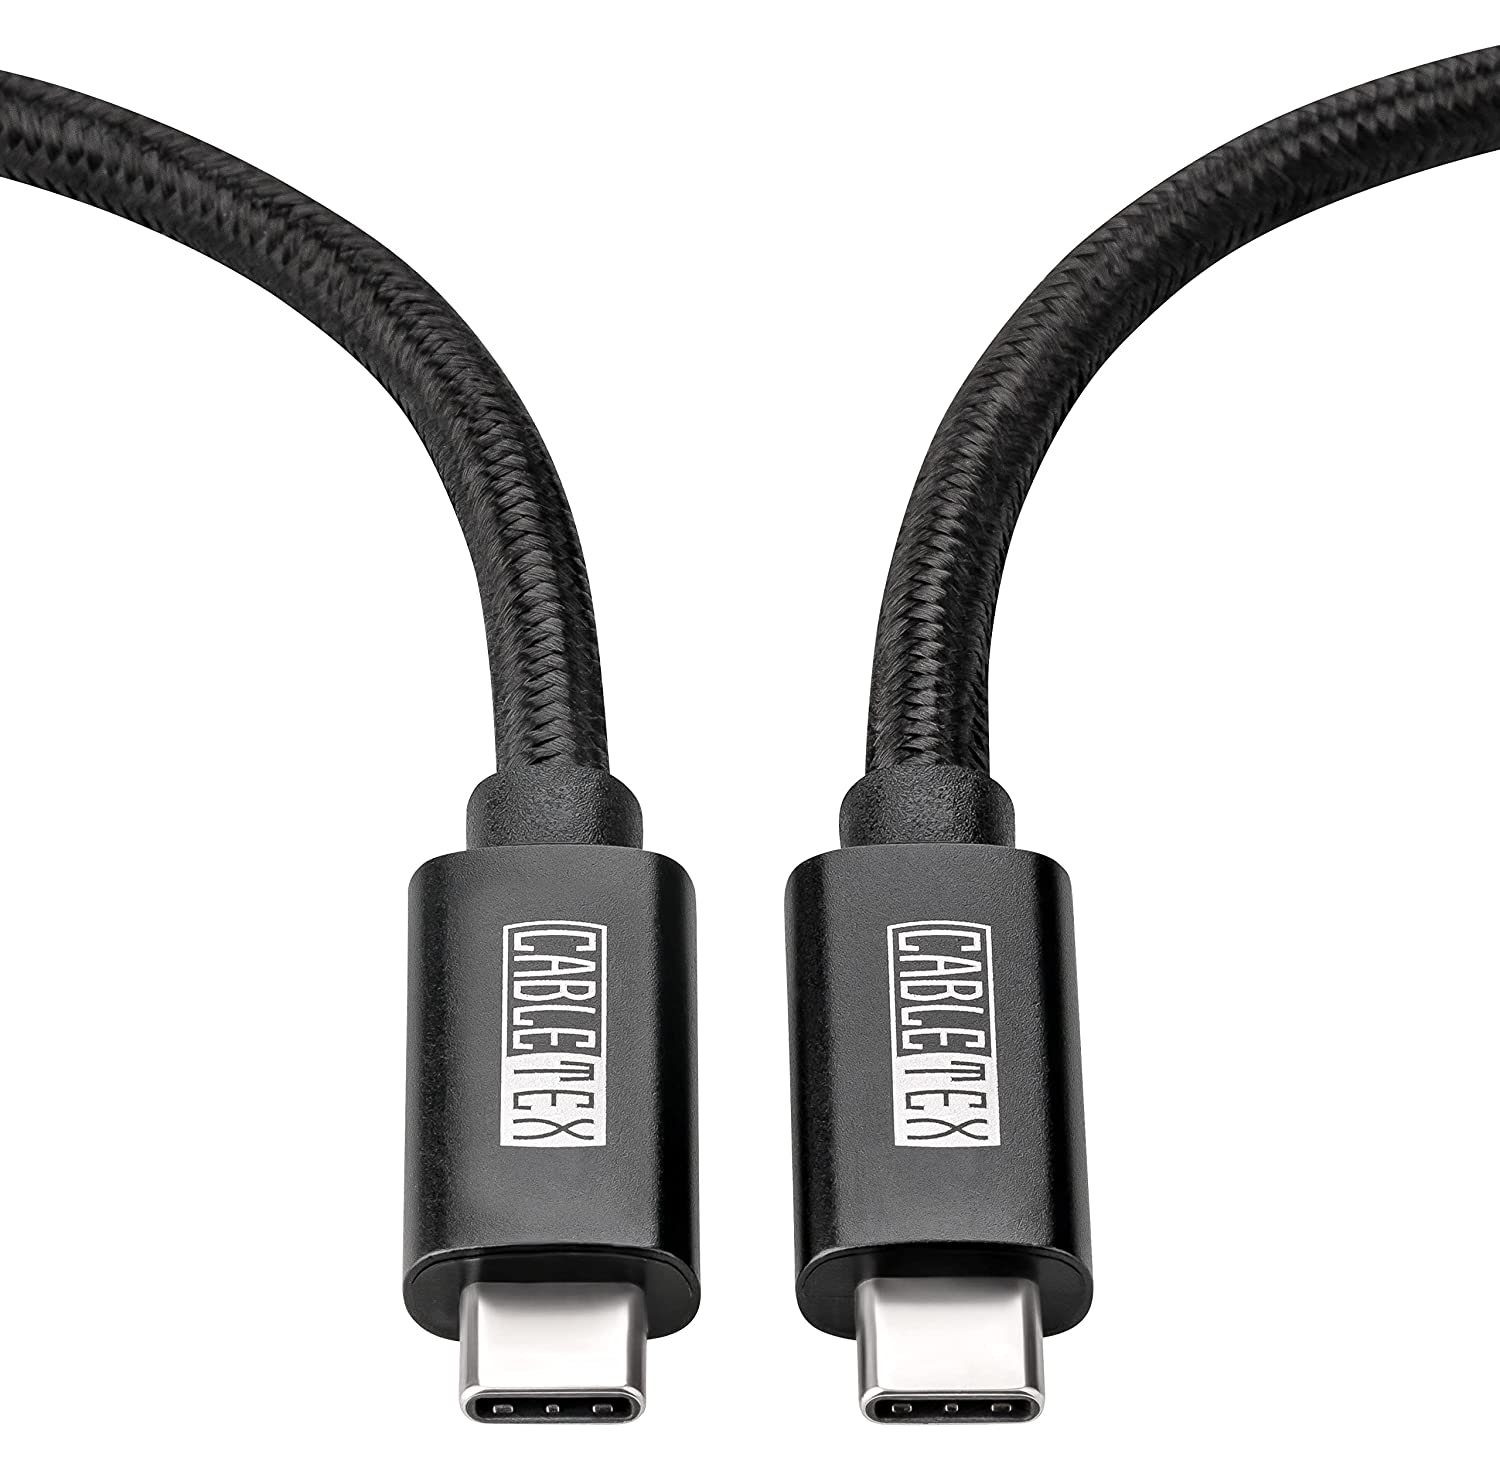 CABLETEX USB 4 Gen3x2 Monitorkabel Thunderbolt 3 Thunderbolt-Kabel, USB-C,  USB4, USB 4, USB-C, USB4, USB 4 (50 cm), 40 Gbit/s, 8K bei 60Hz, 2x 4K bei  60Hz, USB Power Delivery 240W, 48V,